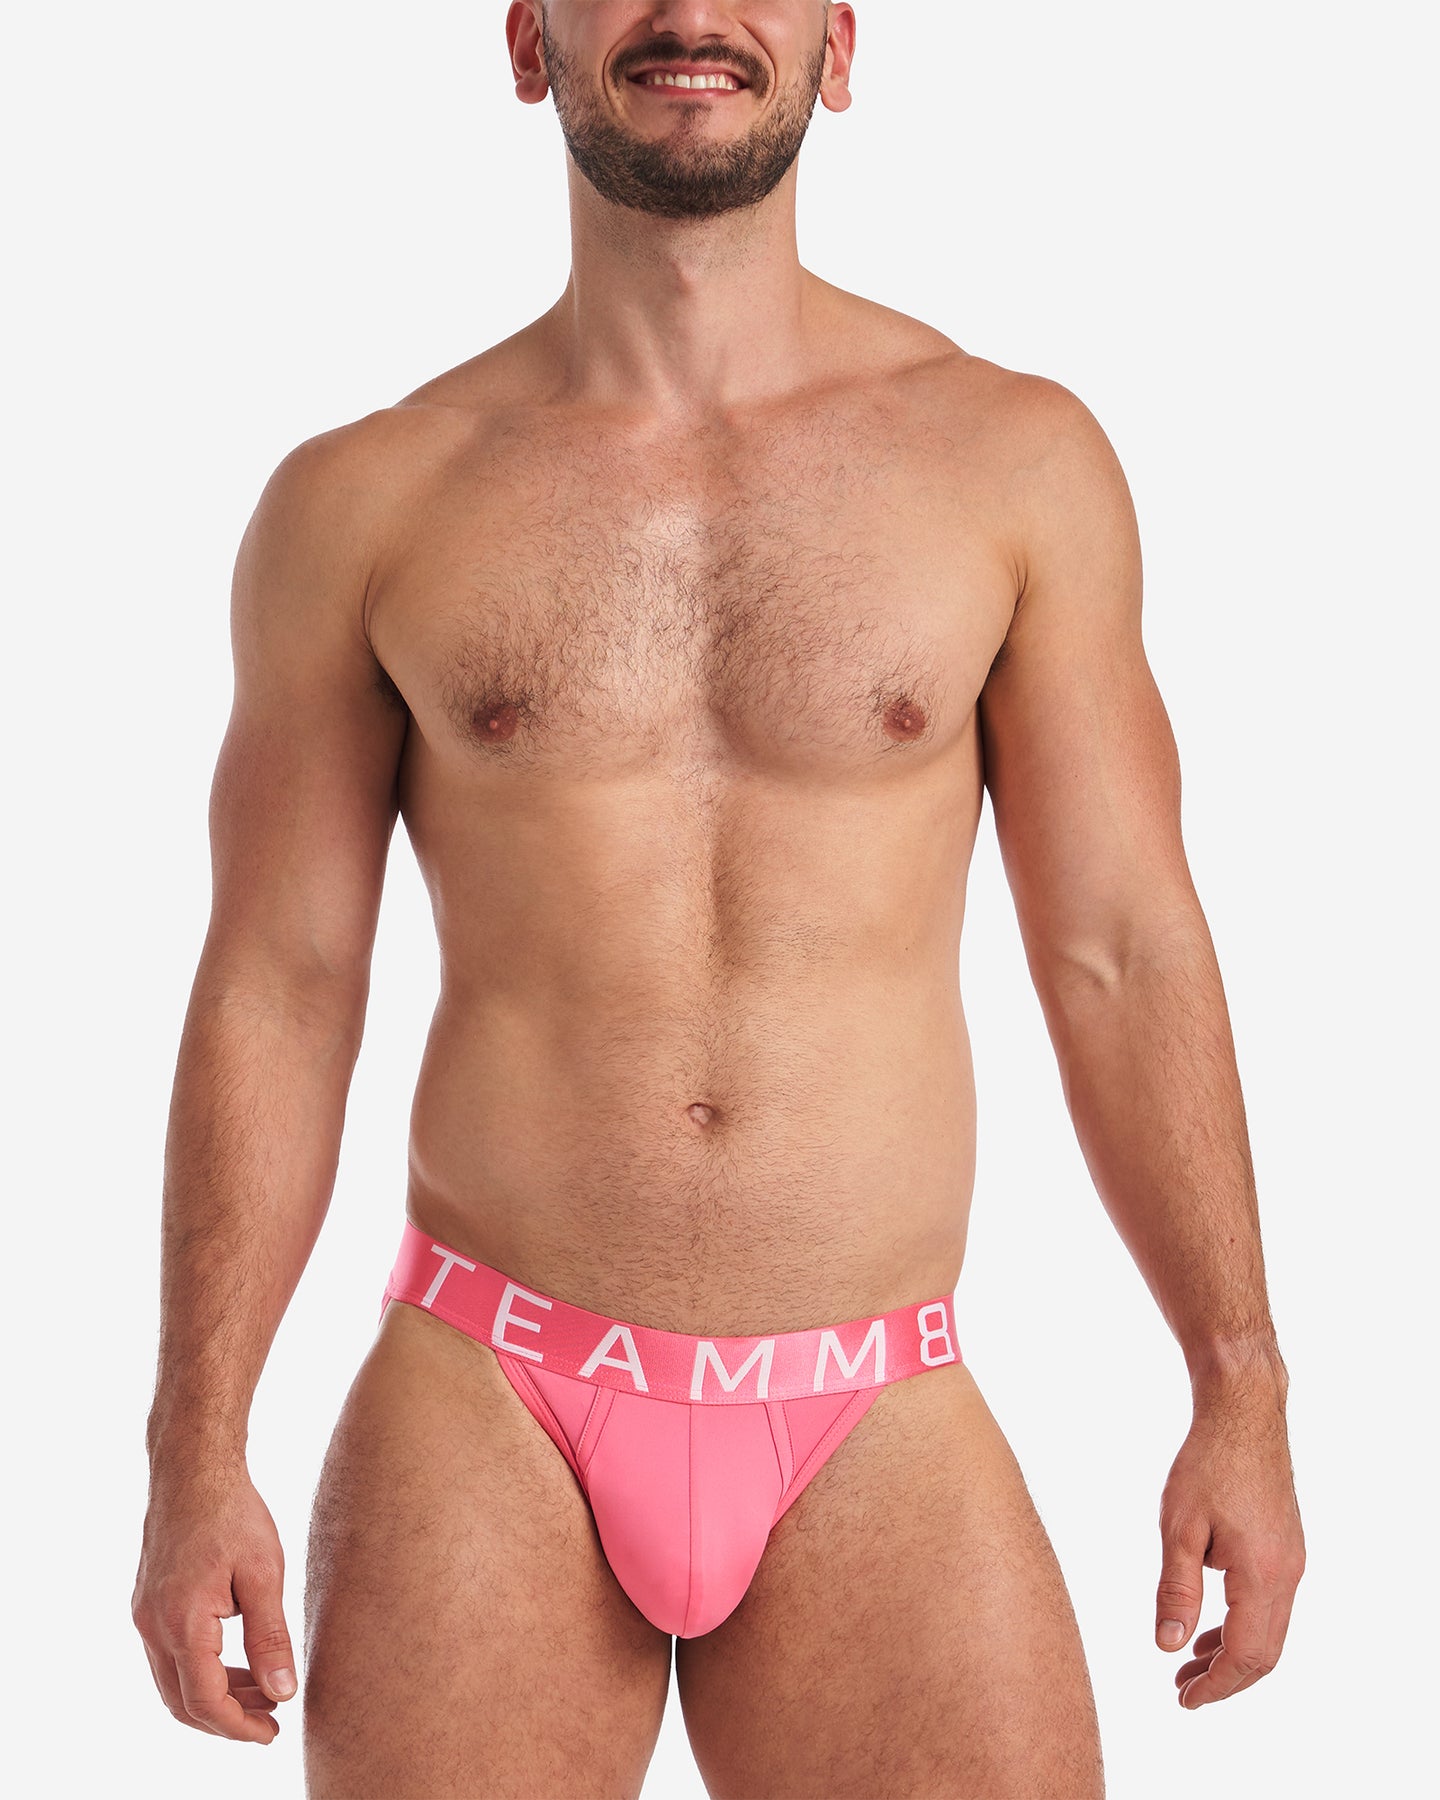 Spartacus Brief 2.0 - Hot Pink, Men's Underwear Briefs